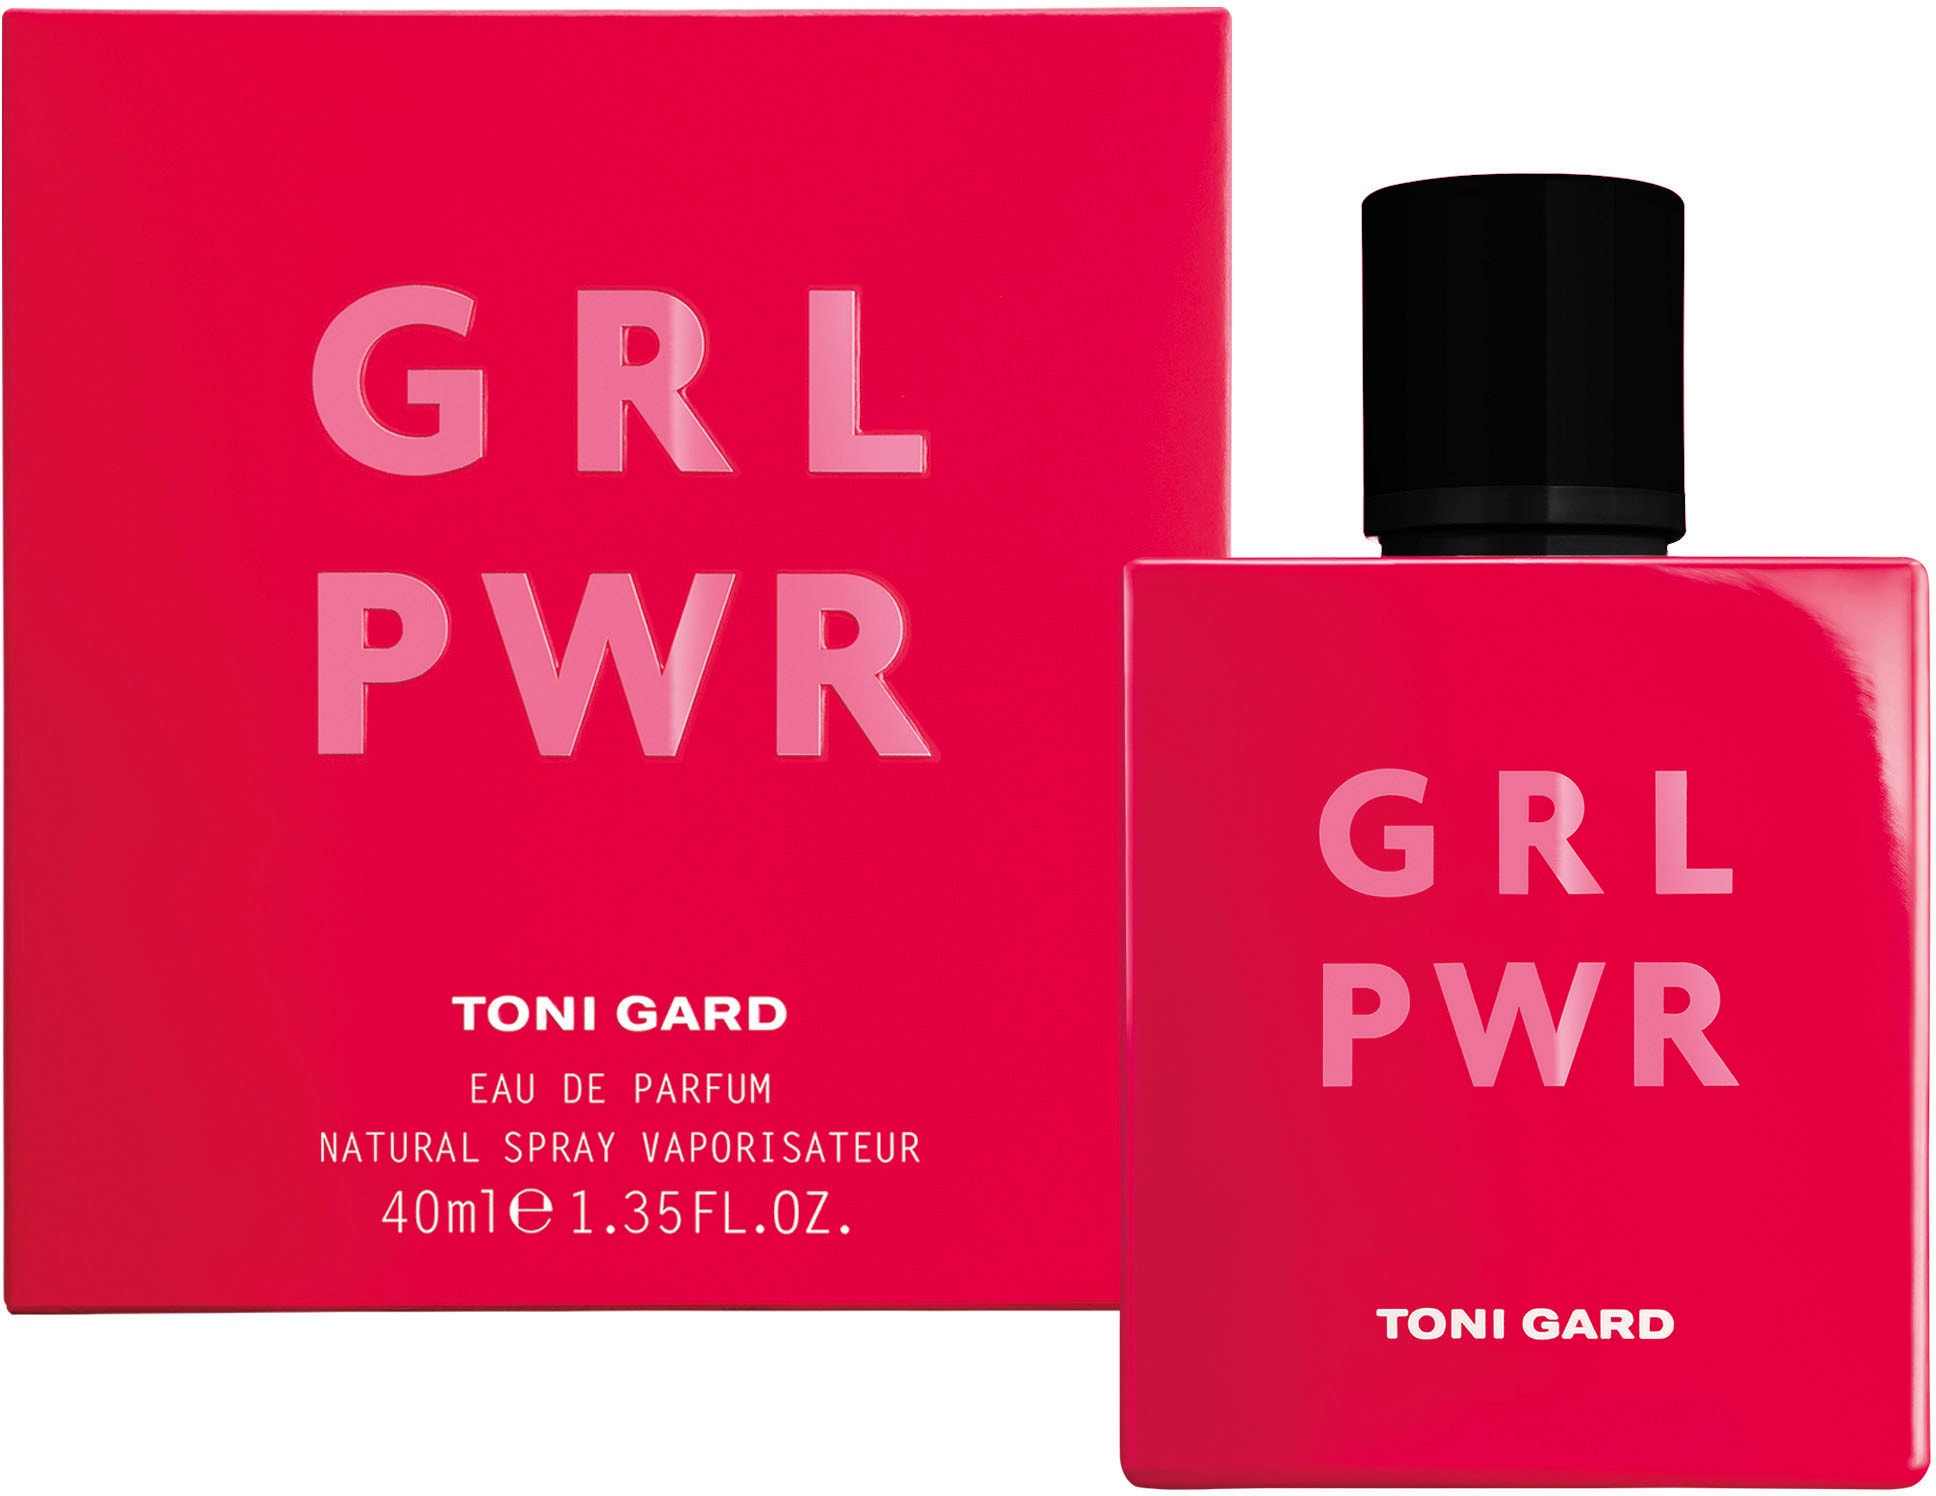 TONI GARD Eau de online PWR EdP« | »GRL UNIVERSAL kaufen Parfum